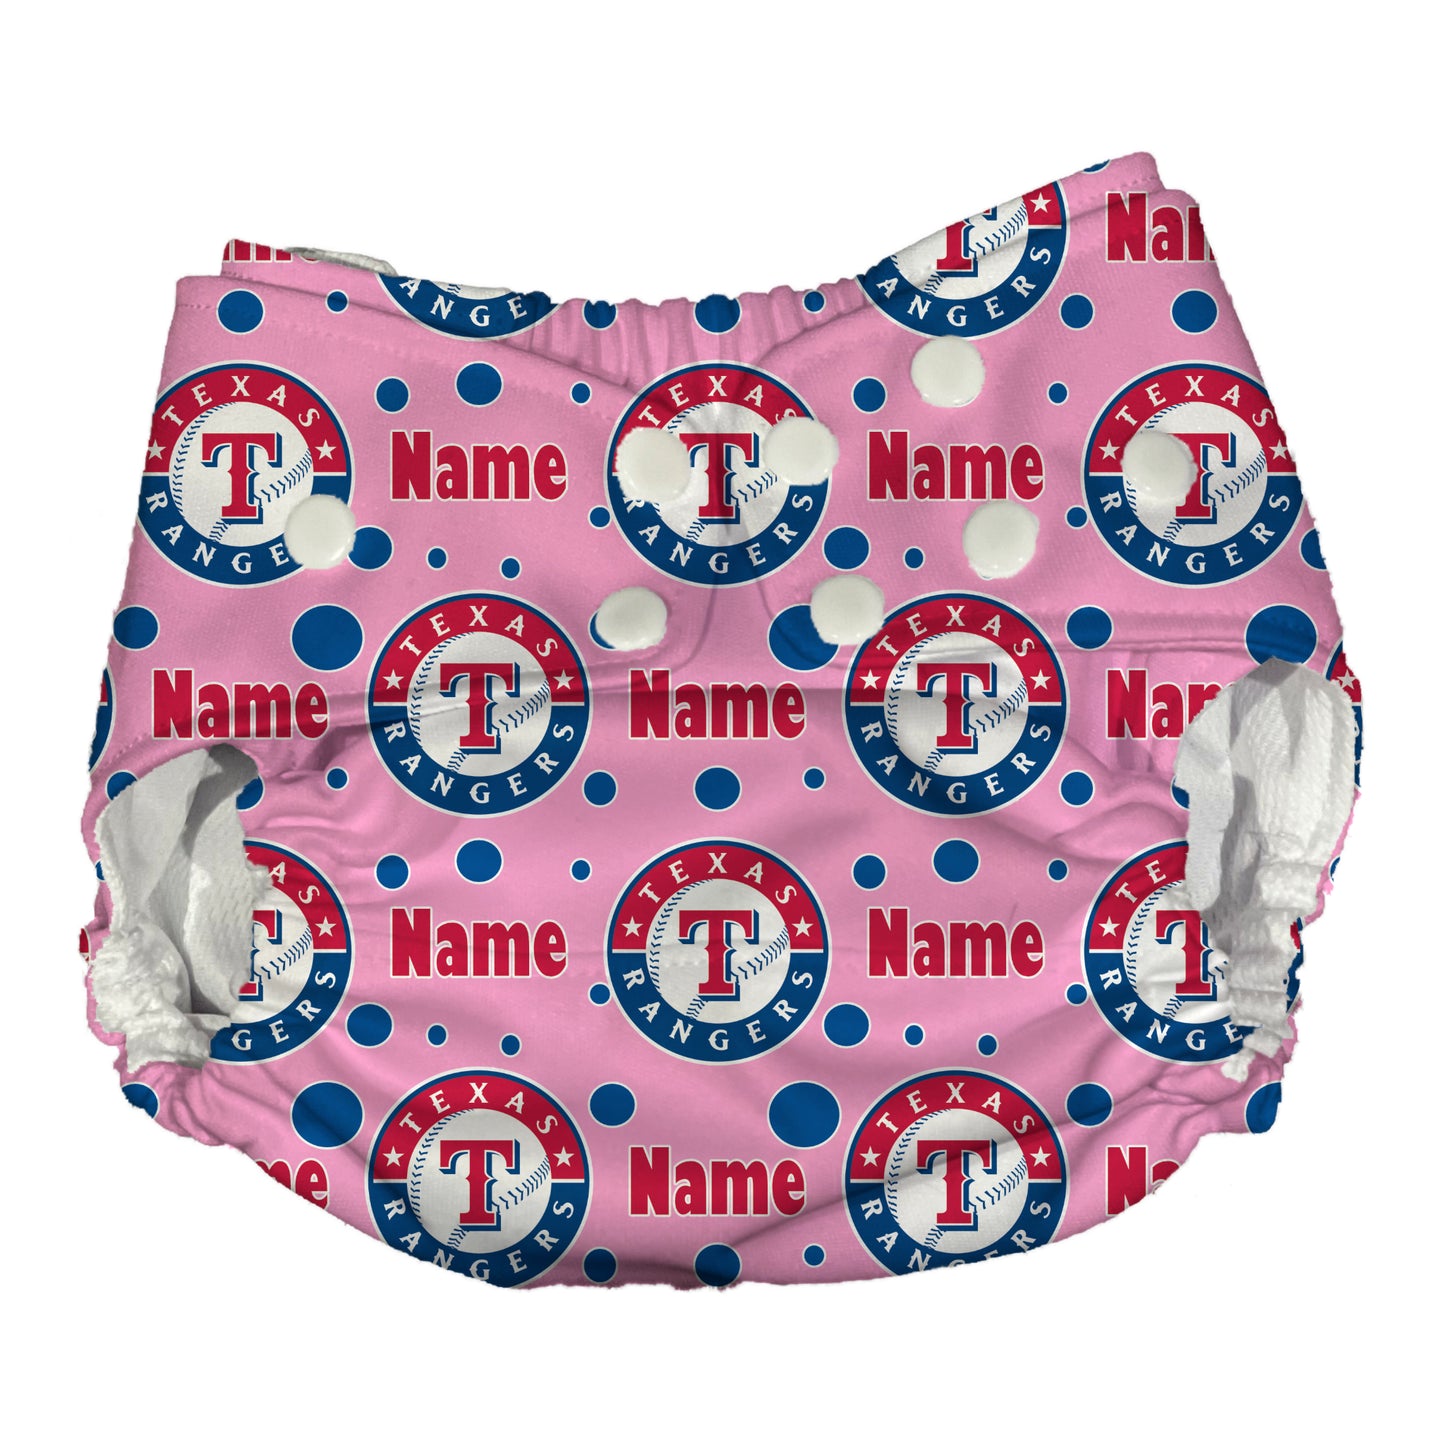 Texas Rangers AI2 Cloth Diaper